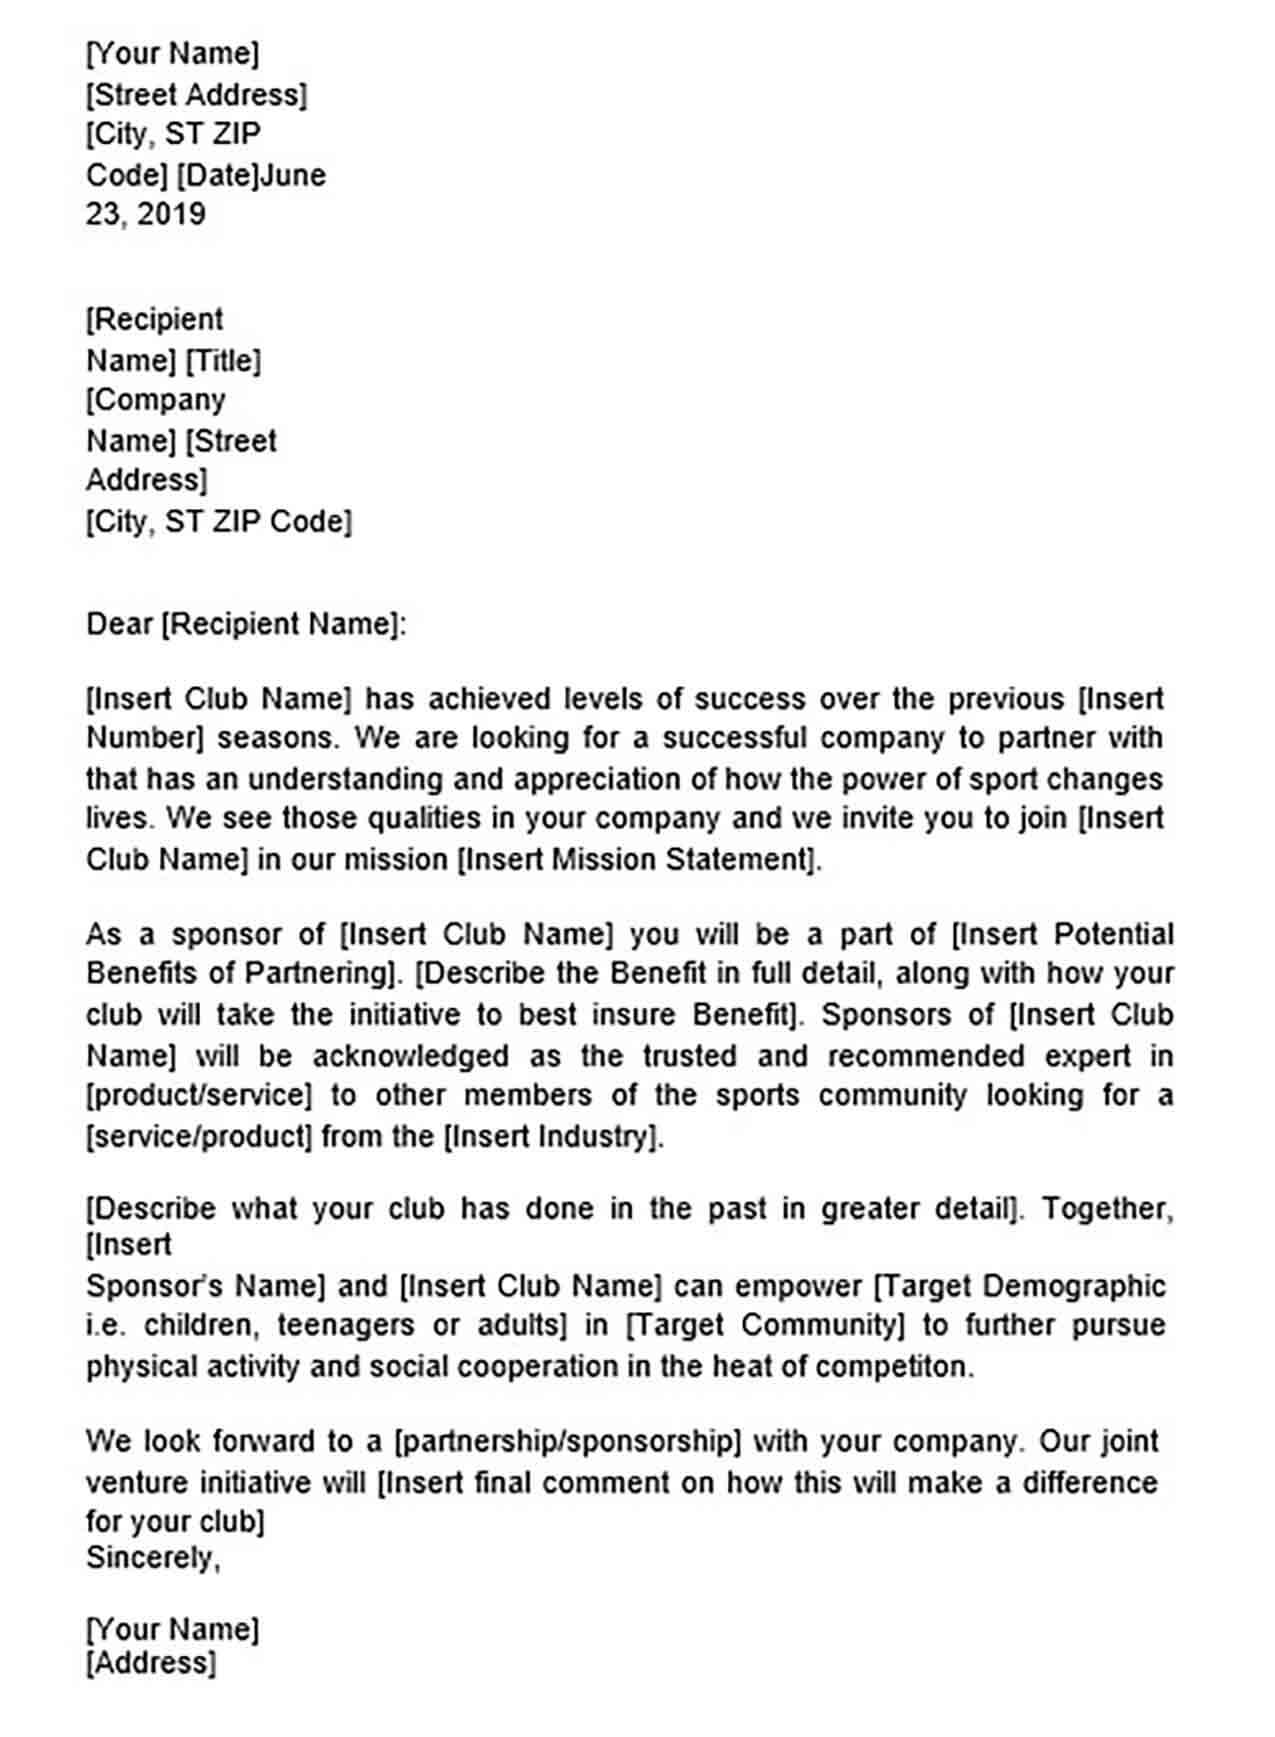 Partnership Proposal Letter Sample